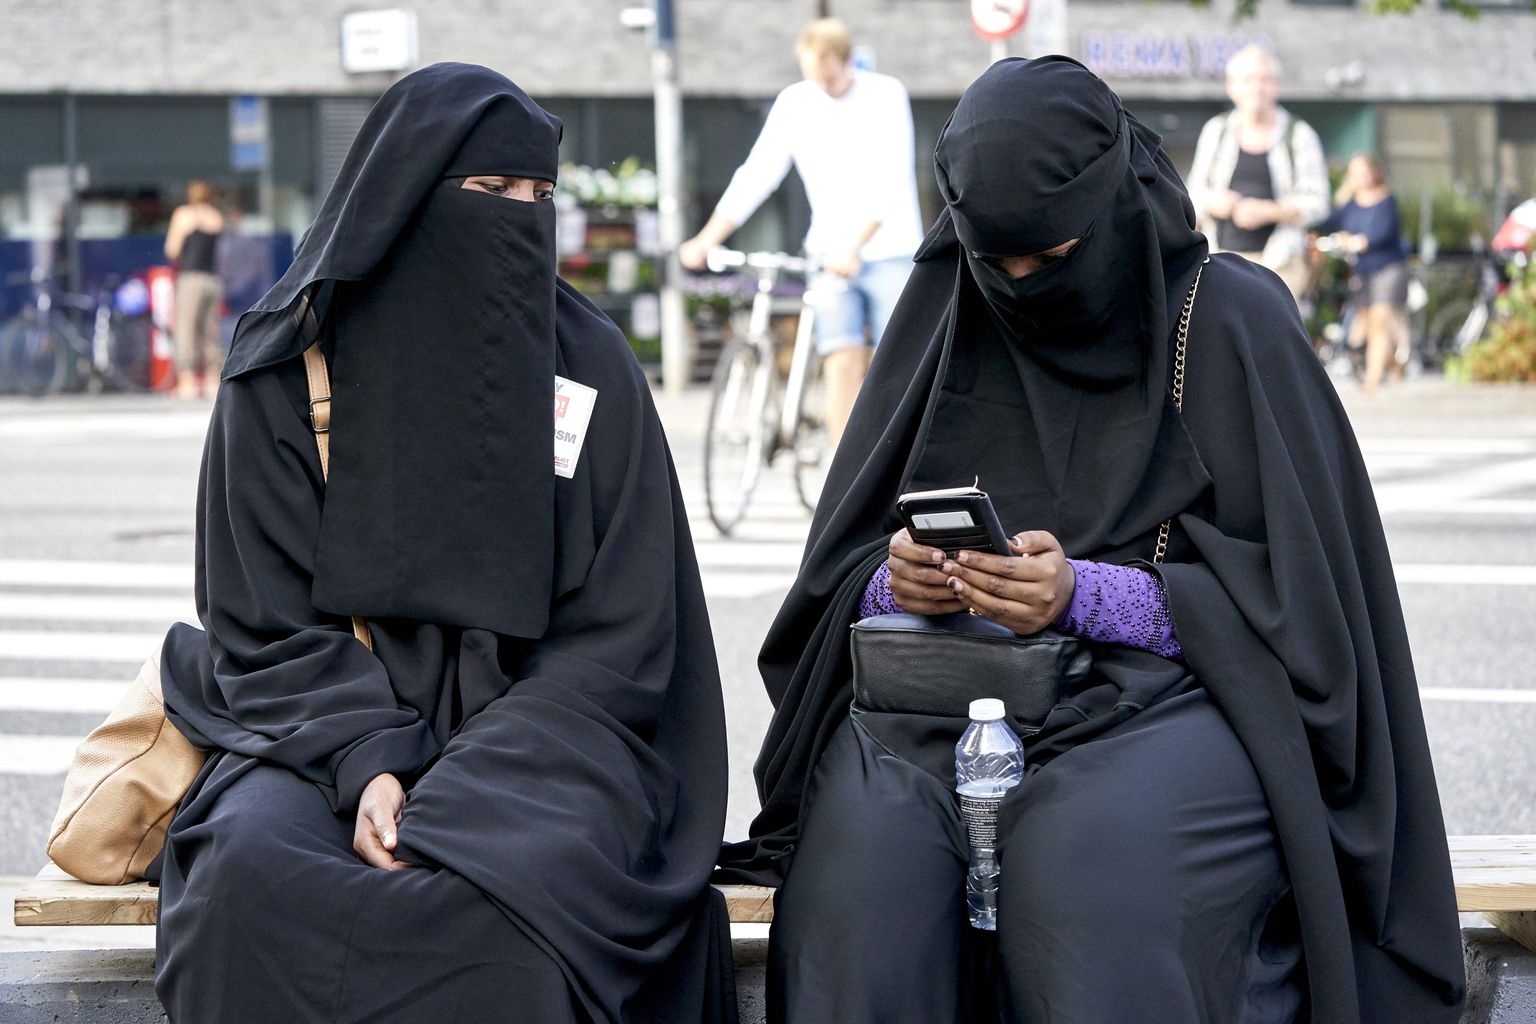 Nägu katvat rõivastust kandvad naised meeleavaldusel Taanis.